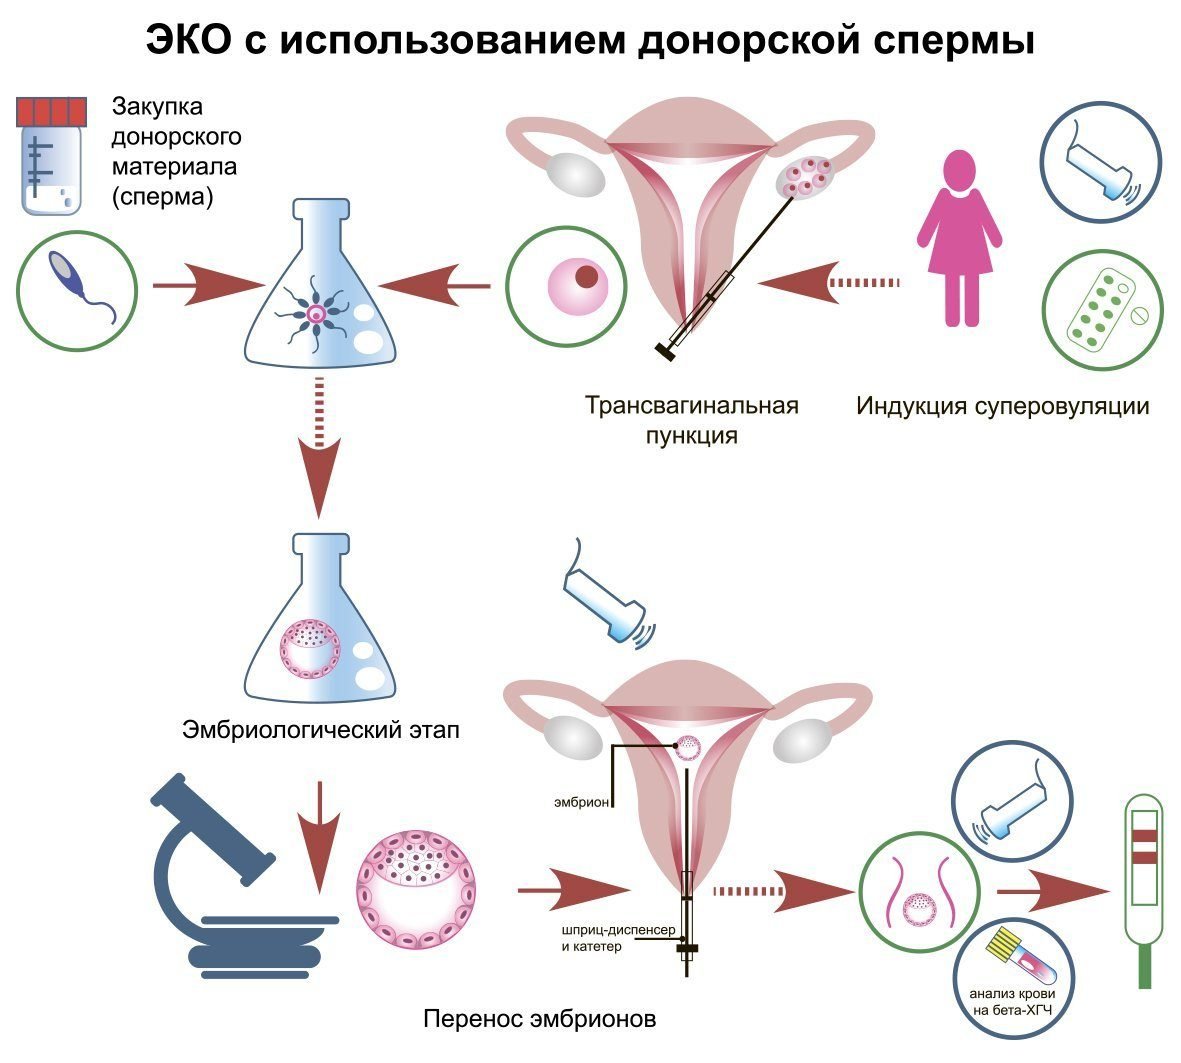 7. Перенос эмбрионов